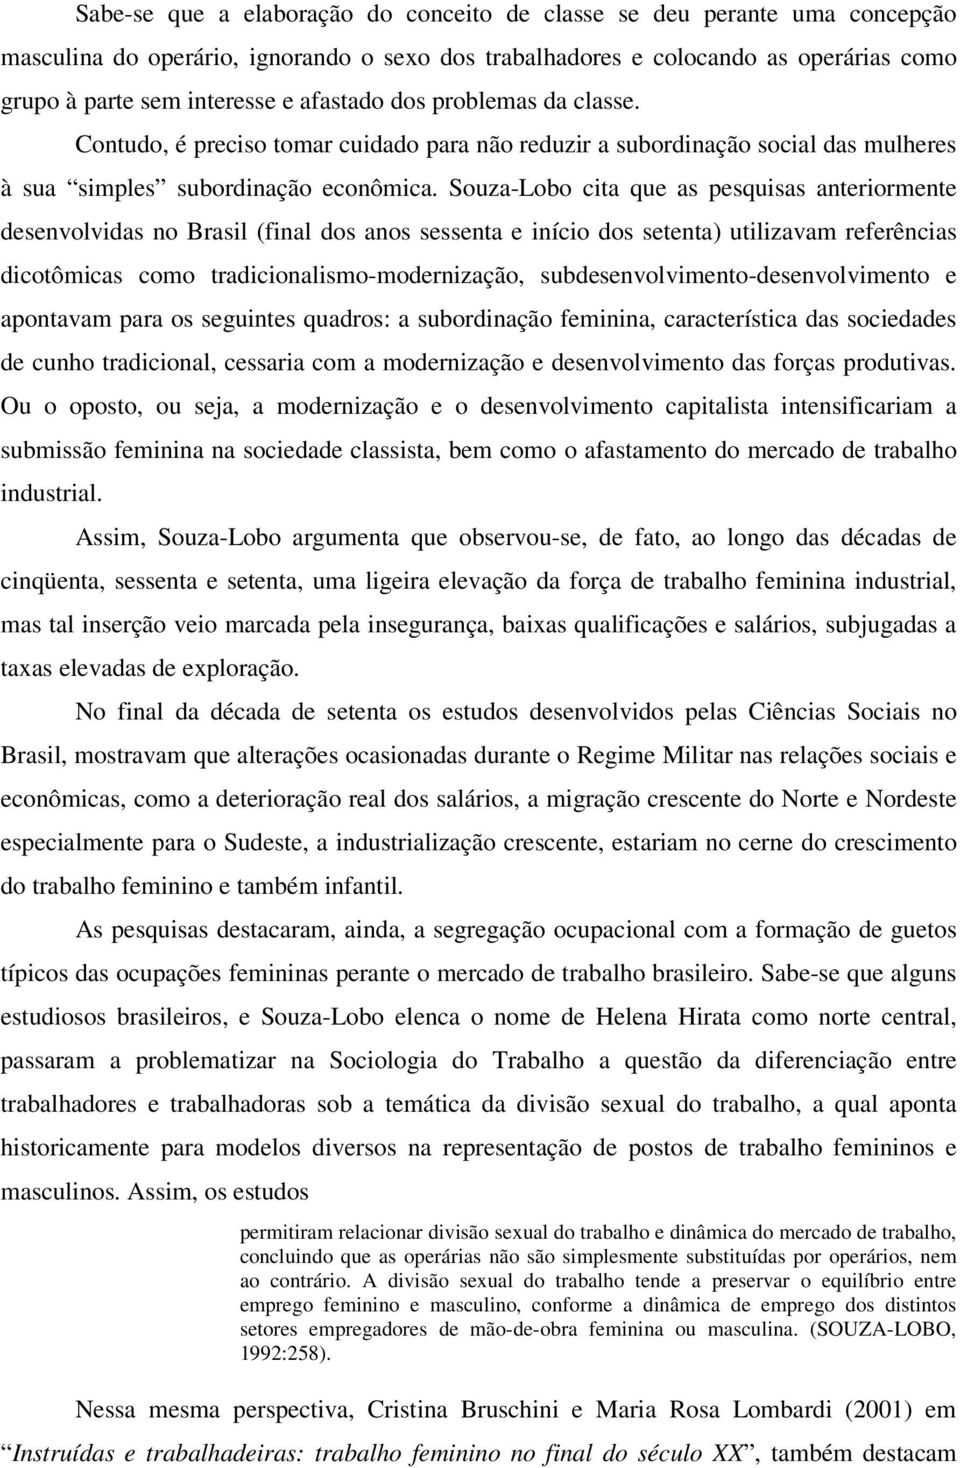 Souza-Lobo cita que as pesquisas anteriormente desenvolvidas no Brasil (final dos anos sessenta e início dos setenta) utilizavam referências dicotômicas como tradicionalismo-modernização,